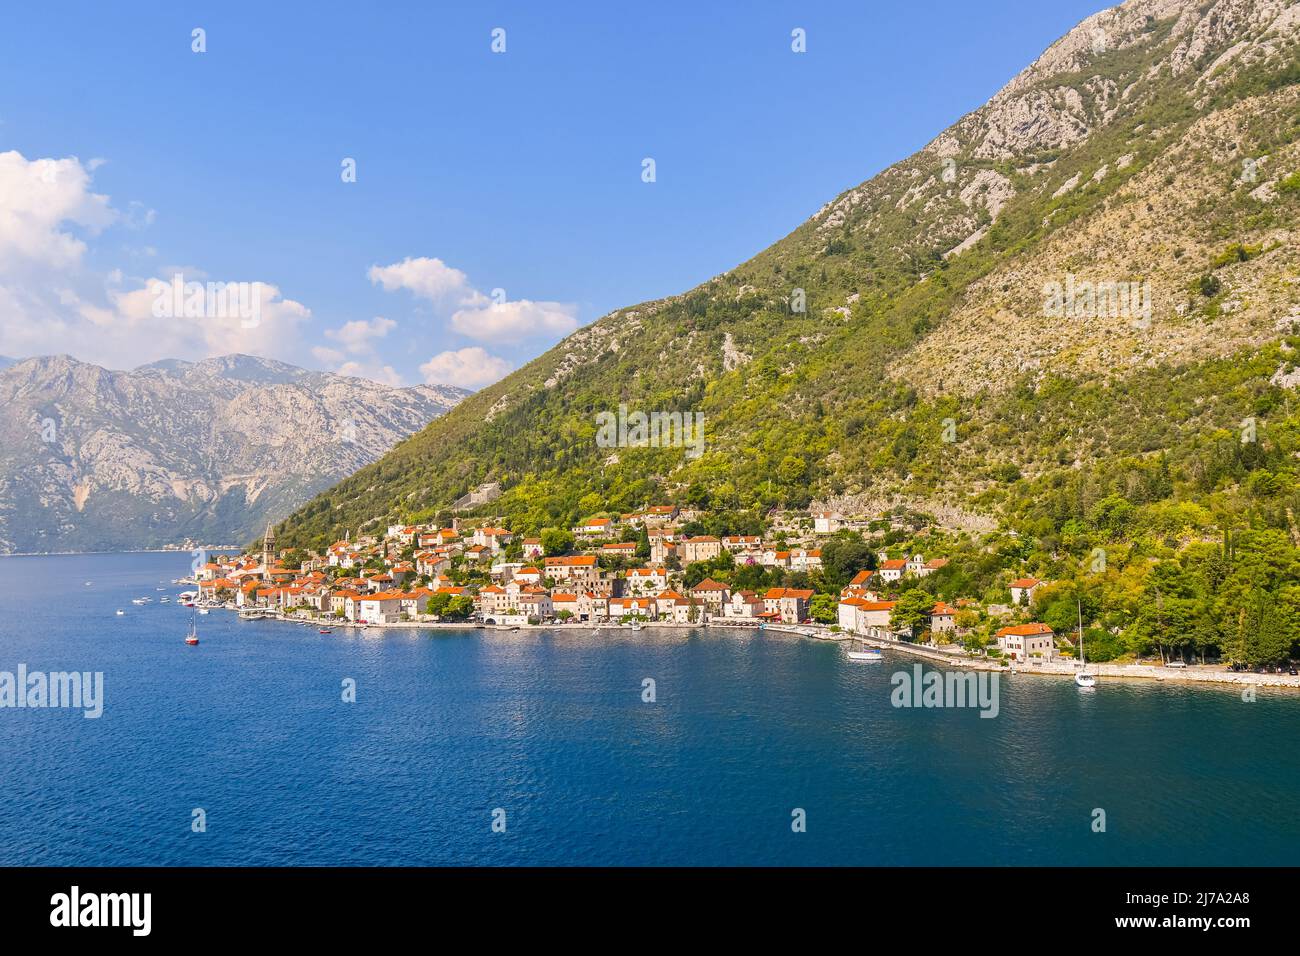 Blick auf das mittelalterliche Dorf Perast, einschließlich der St. Nikola Kirche Turm, an der Küste der Bucht von Kotor, Montenegro. Stockfoto